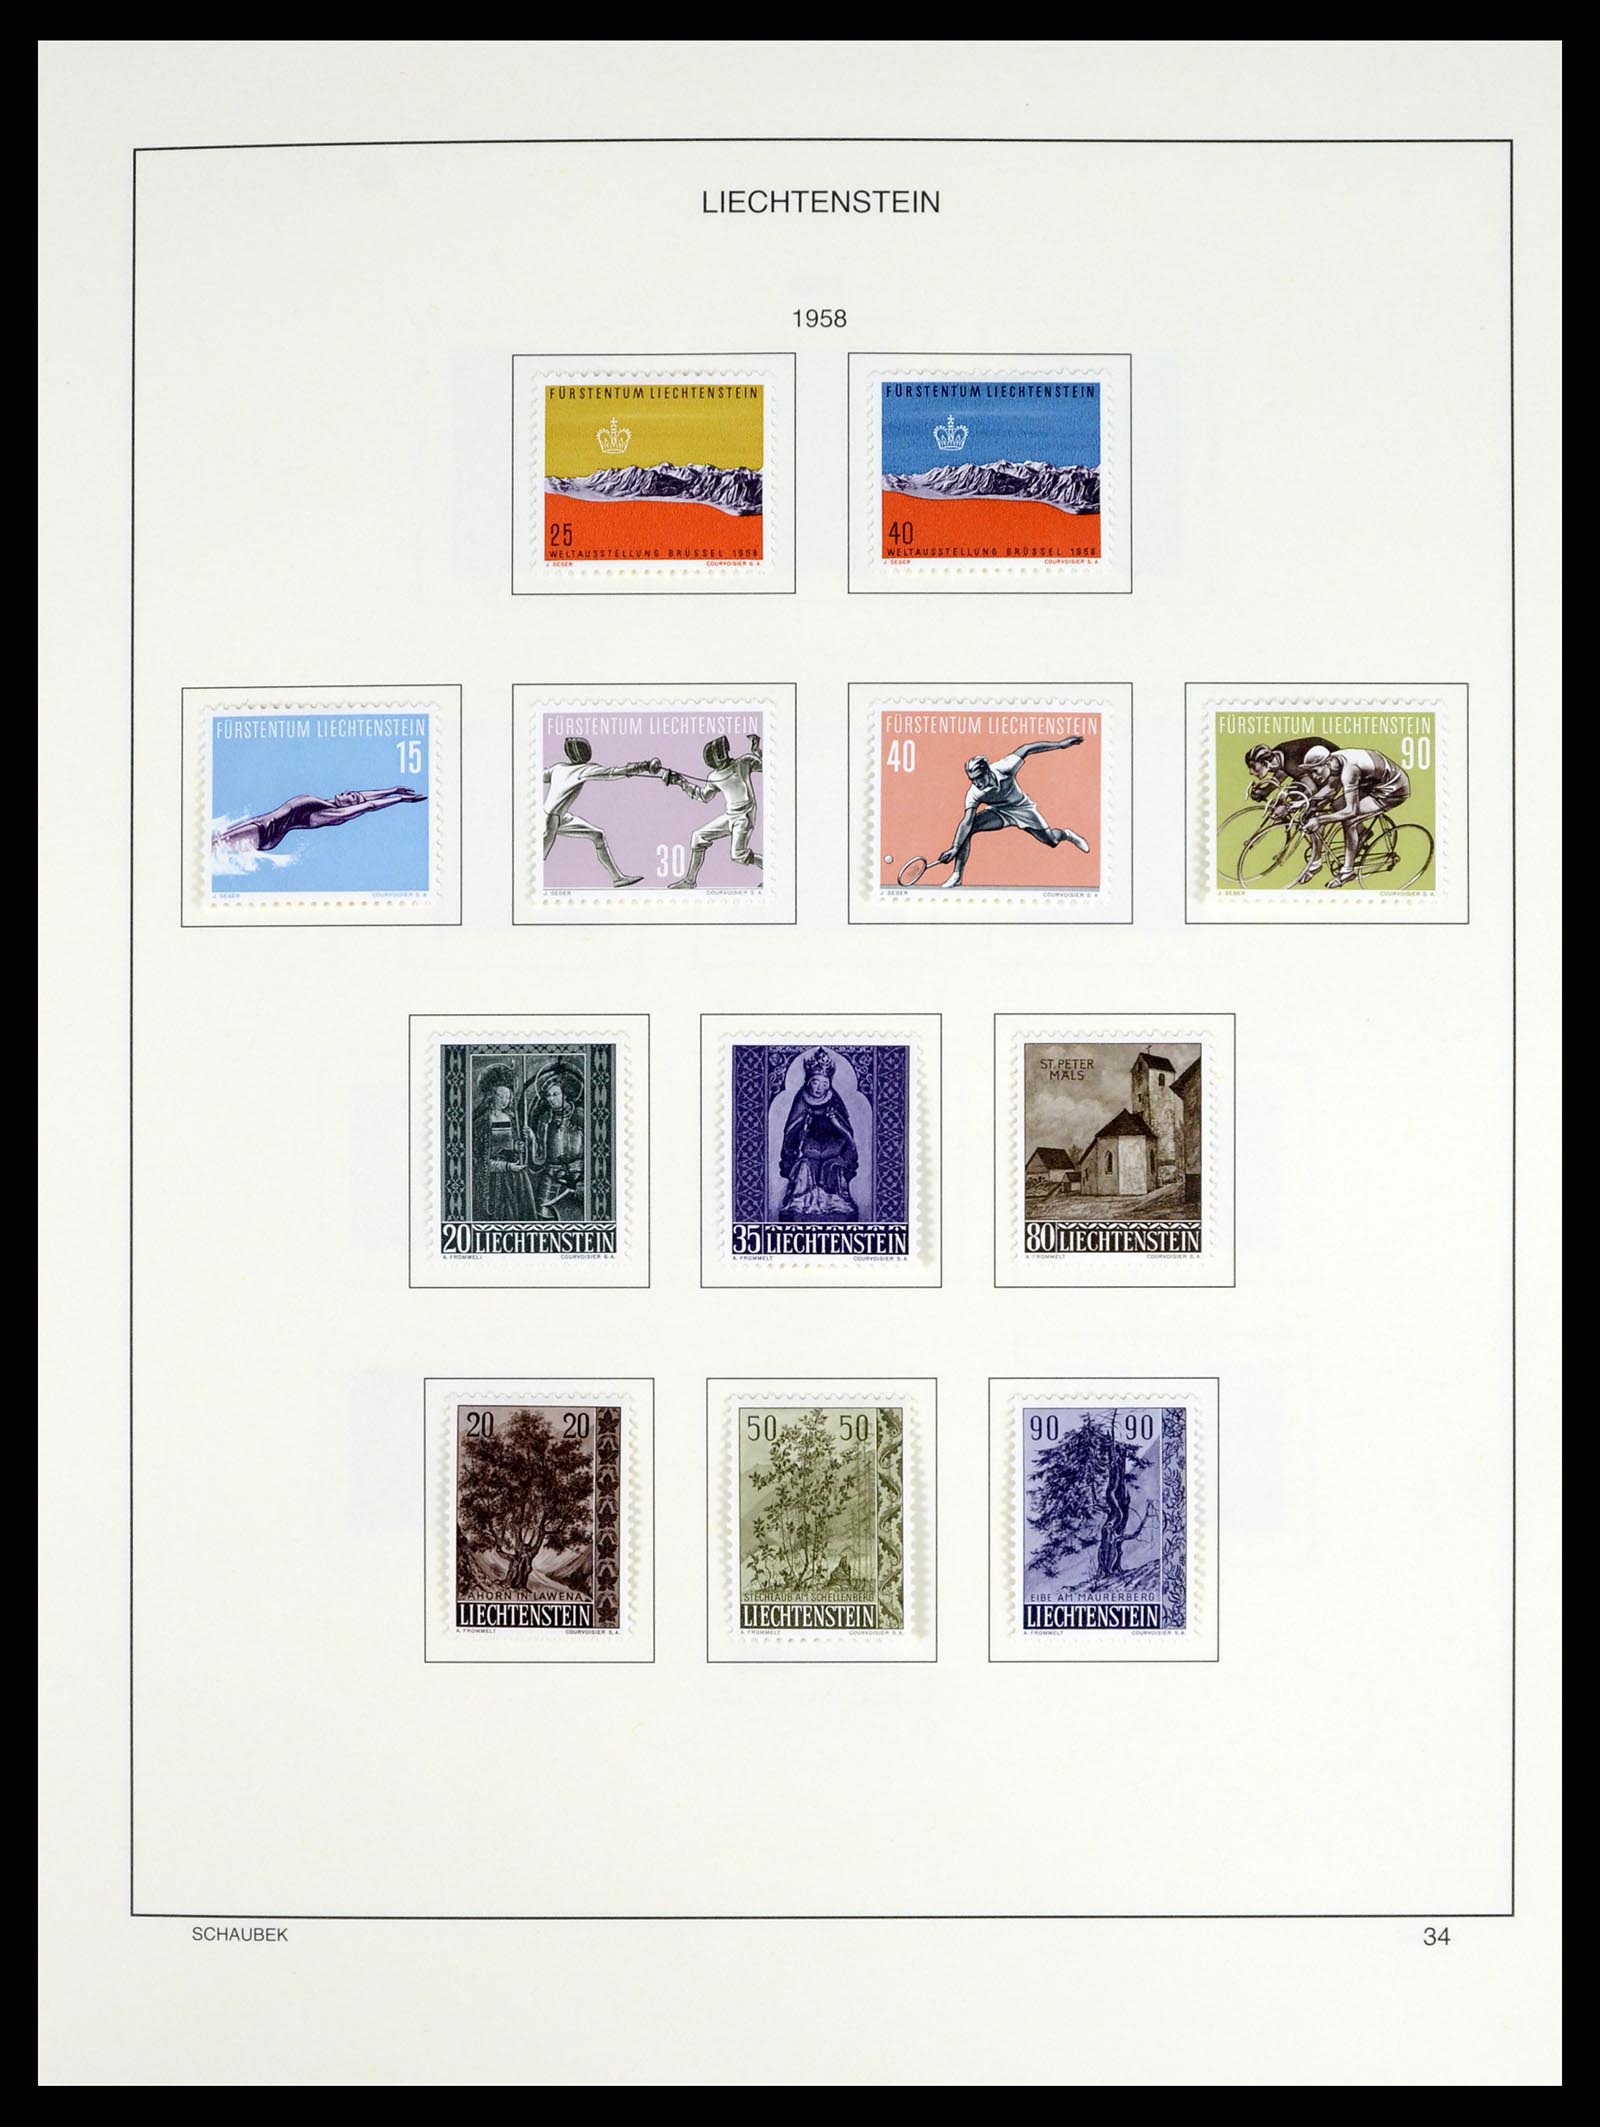 37547 039 - Stamp collection 37547 Liechtenstein 1912-2011.